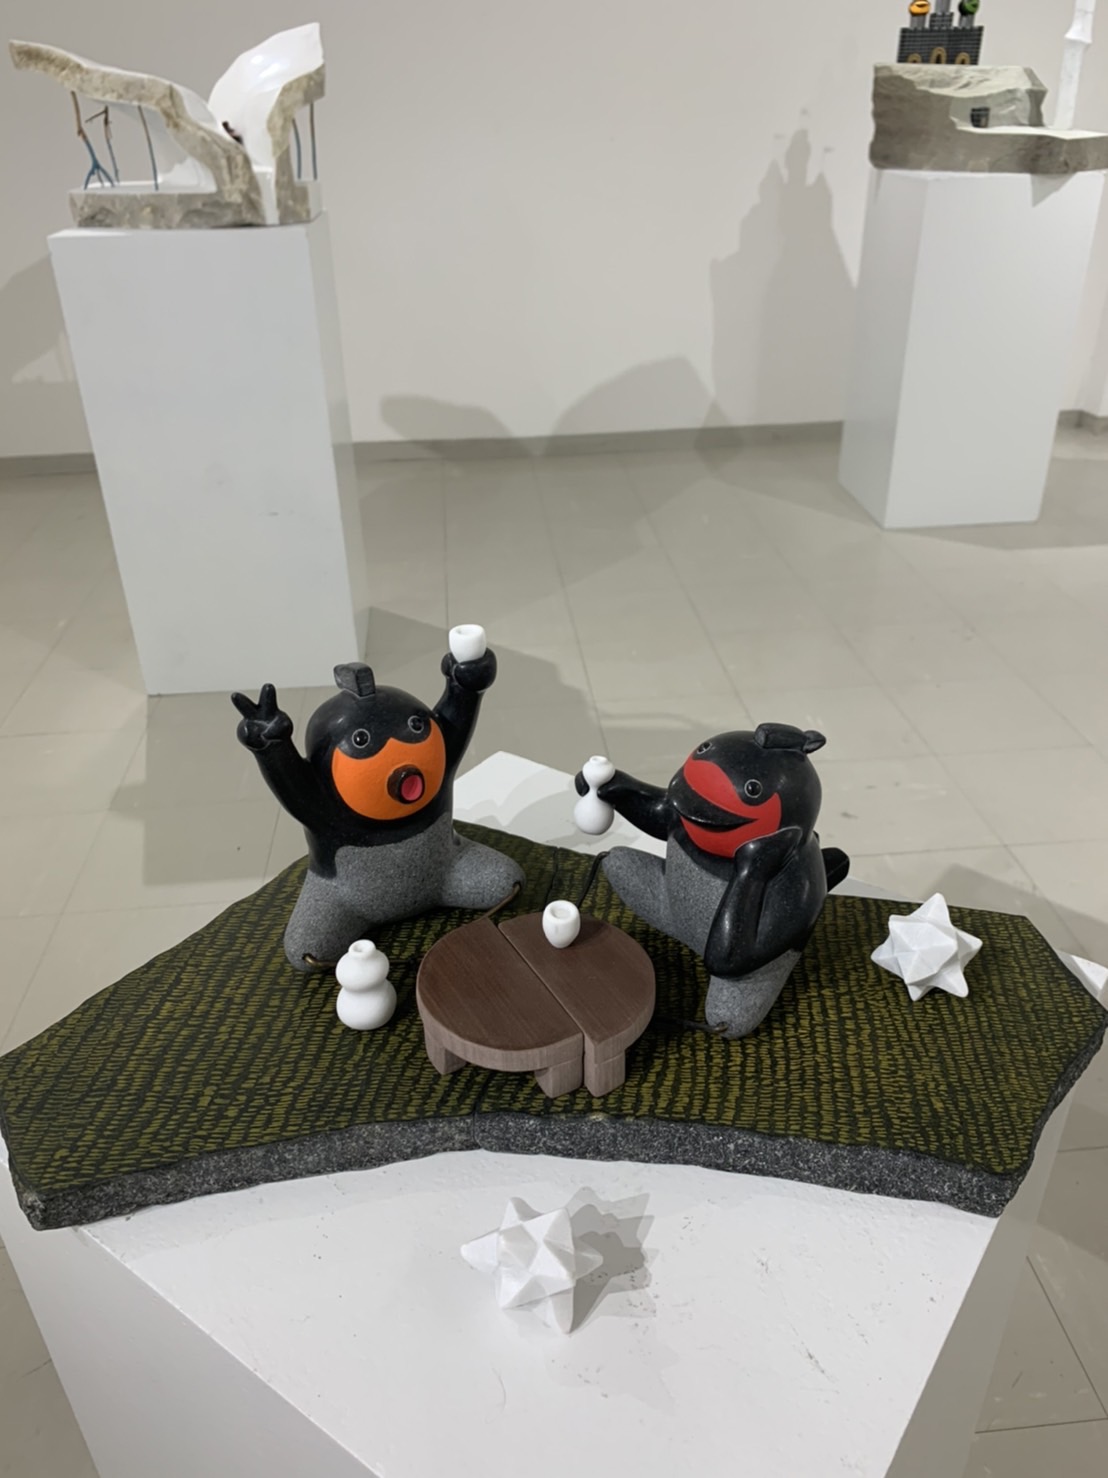 彫刻展SASHI明田一久✖️安部大雅　連動企画の作品販売は本日まで、トートバッグは継続して販売します